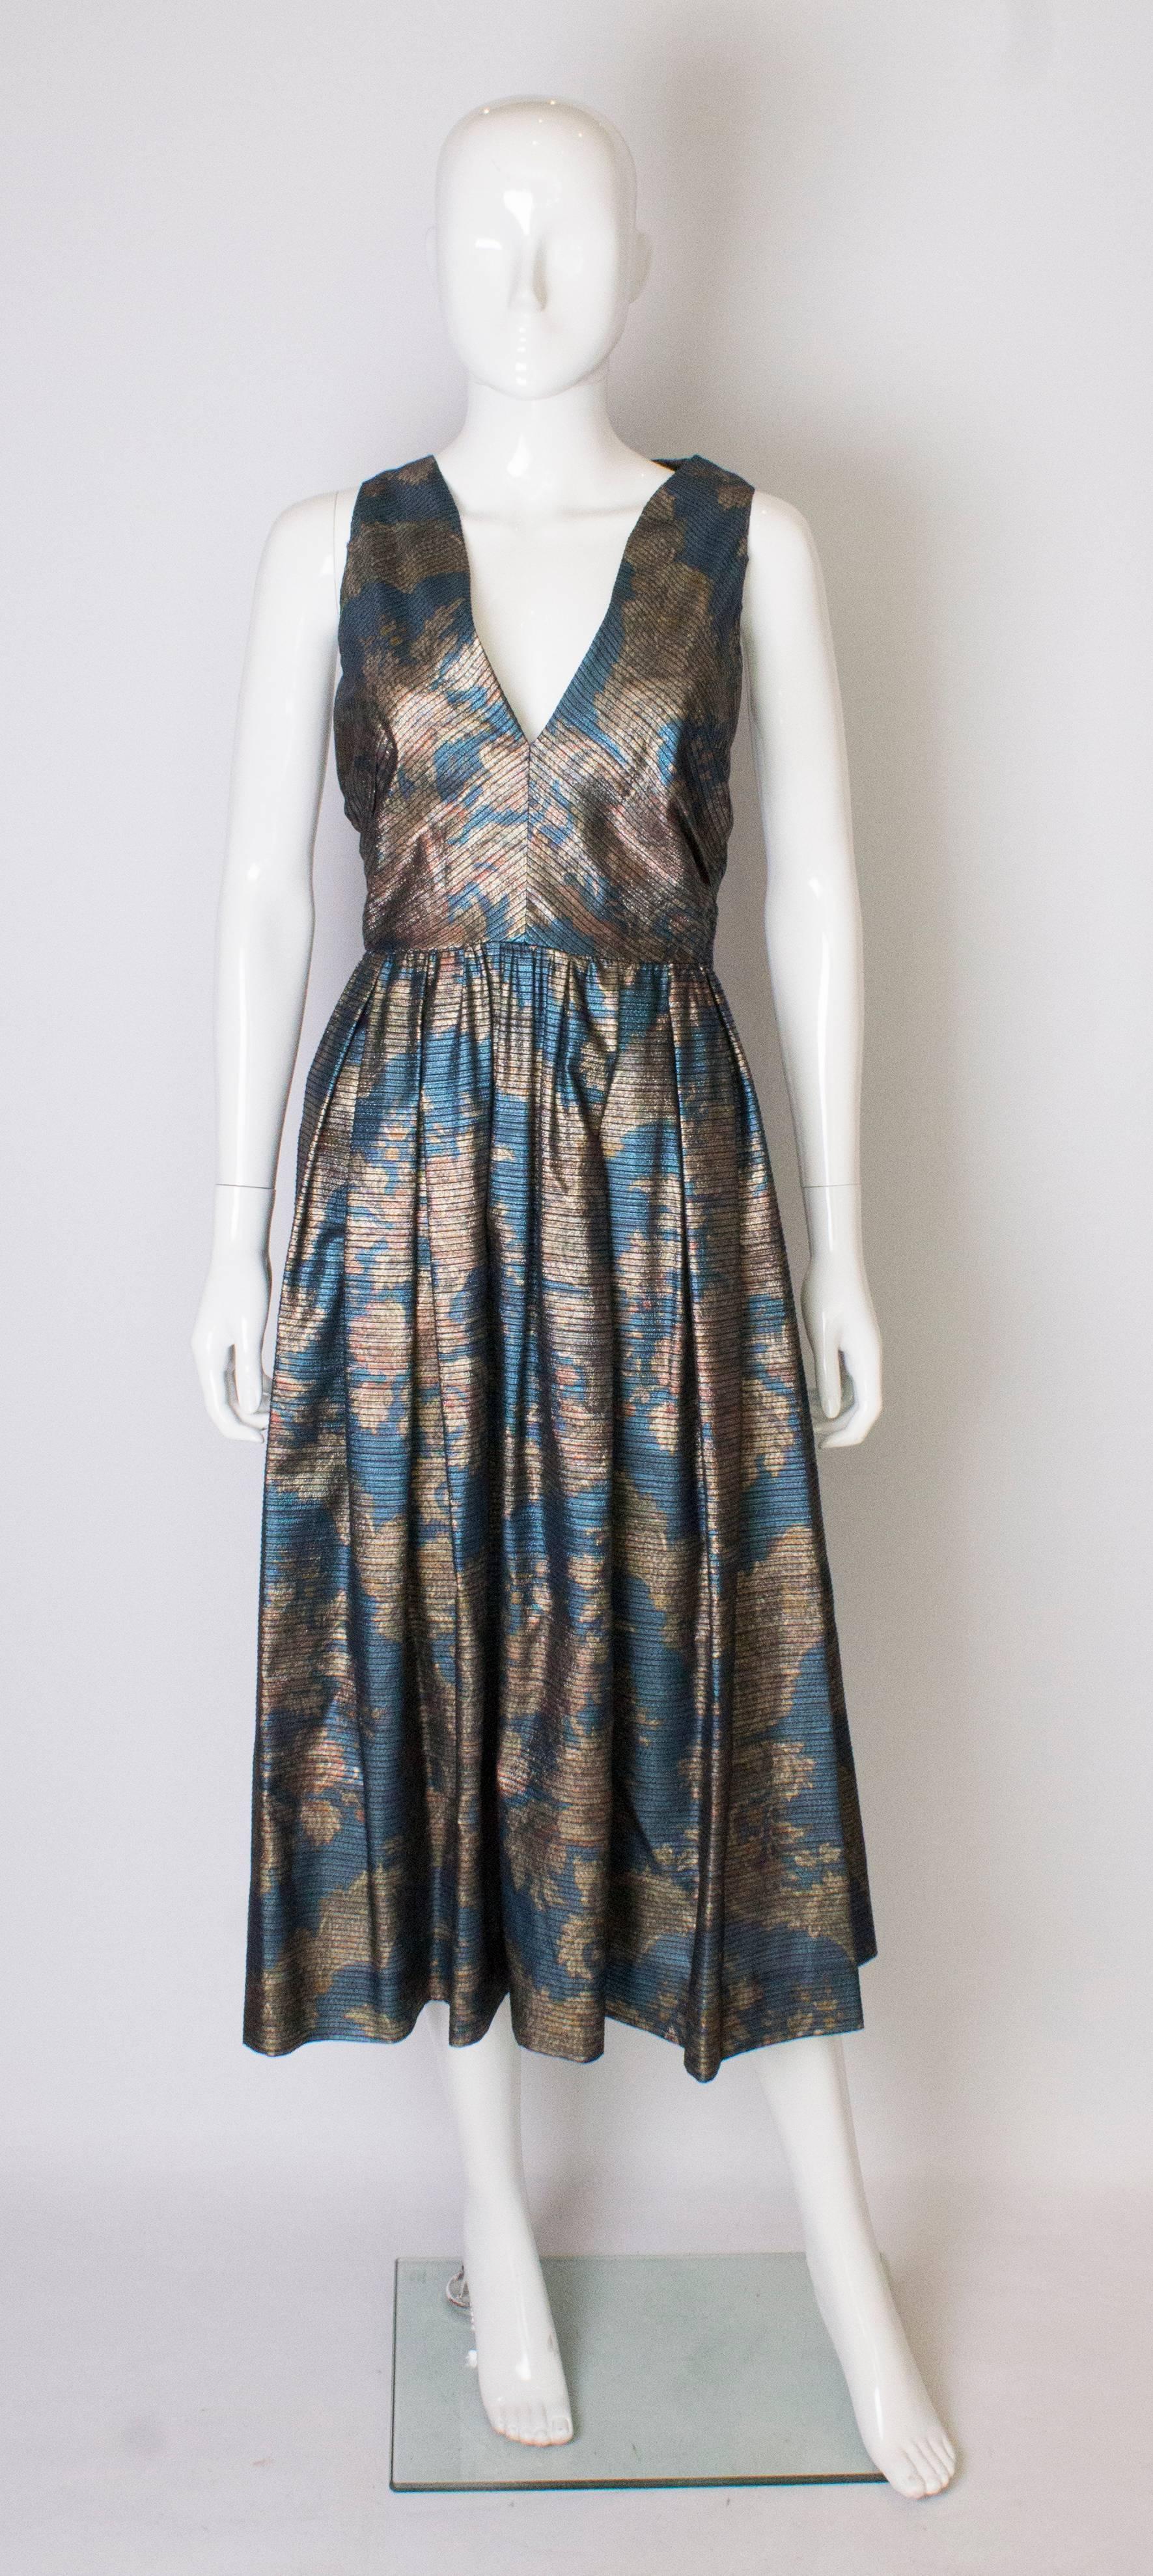 Une magnifique robe vintage de Donald Campbell, dans un tissu bleu, or et rouille.
La robe est sans manches, avec un décolleté en V et une fermeture éclair centrale au dos.